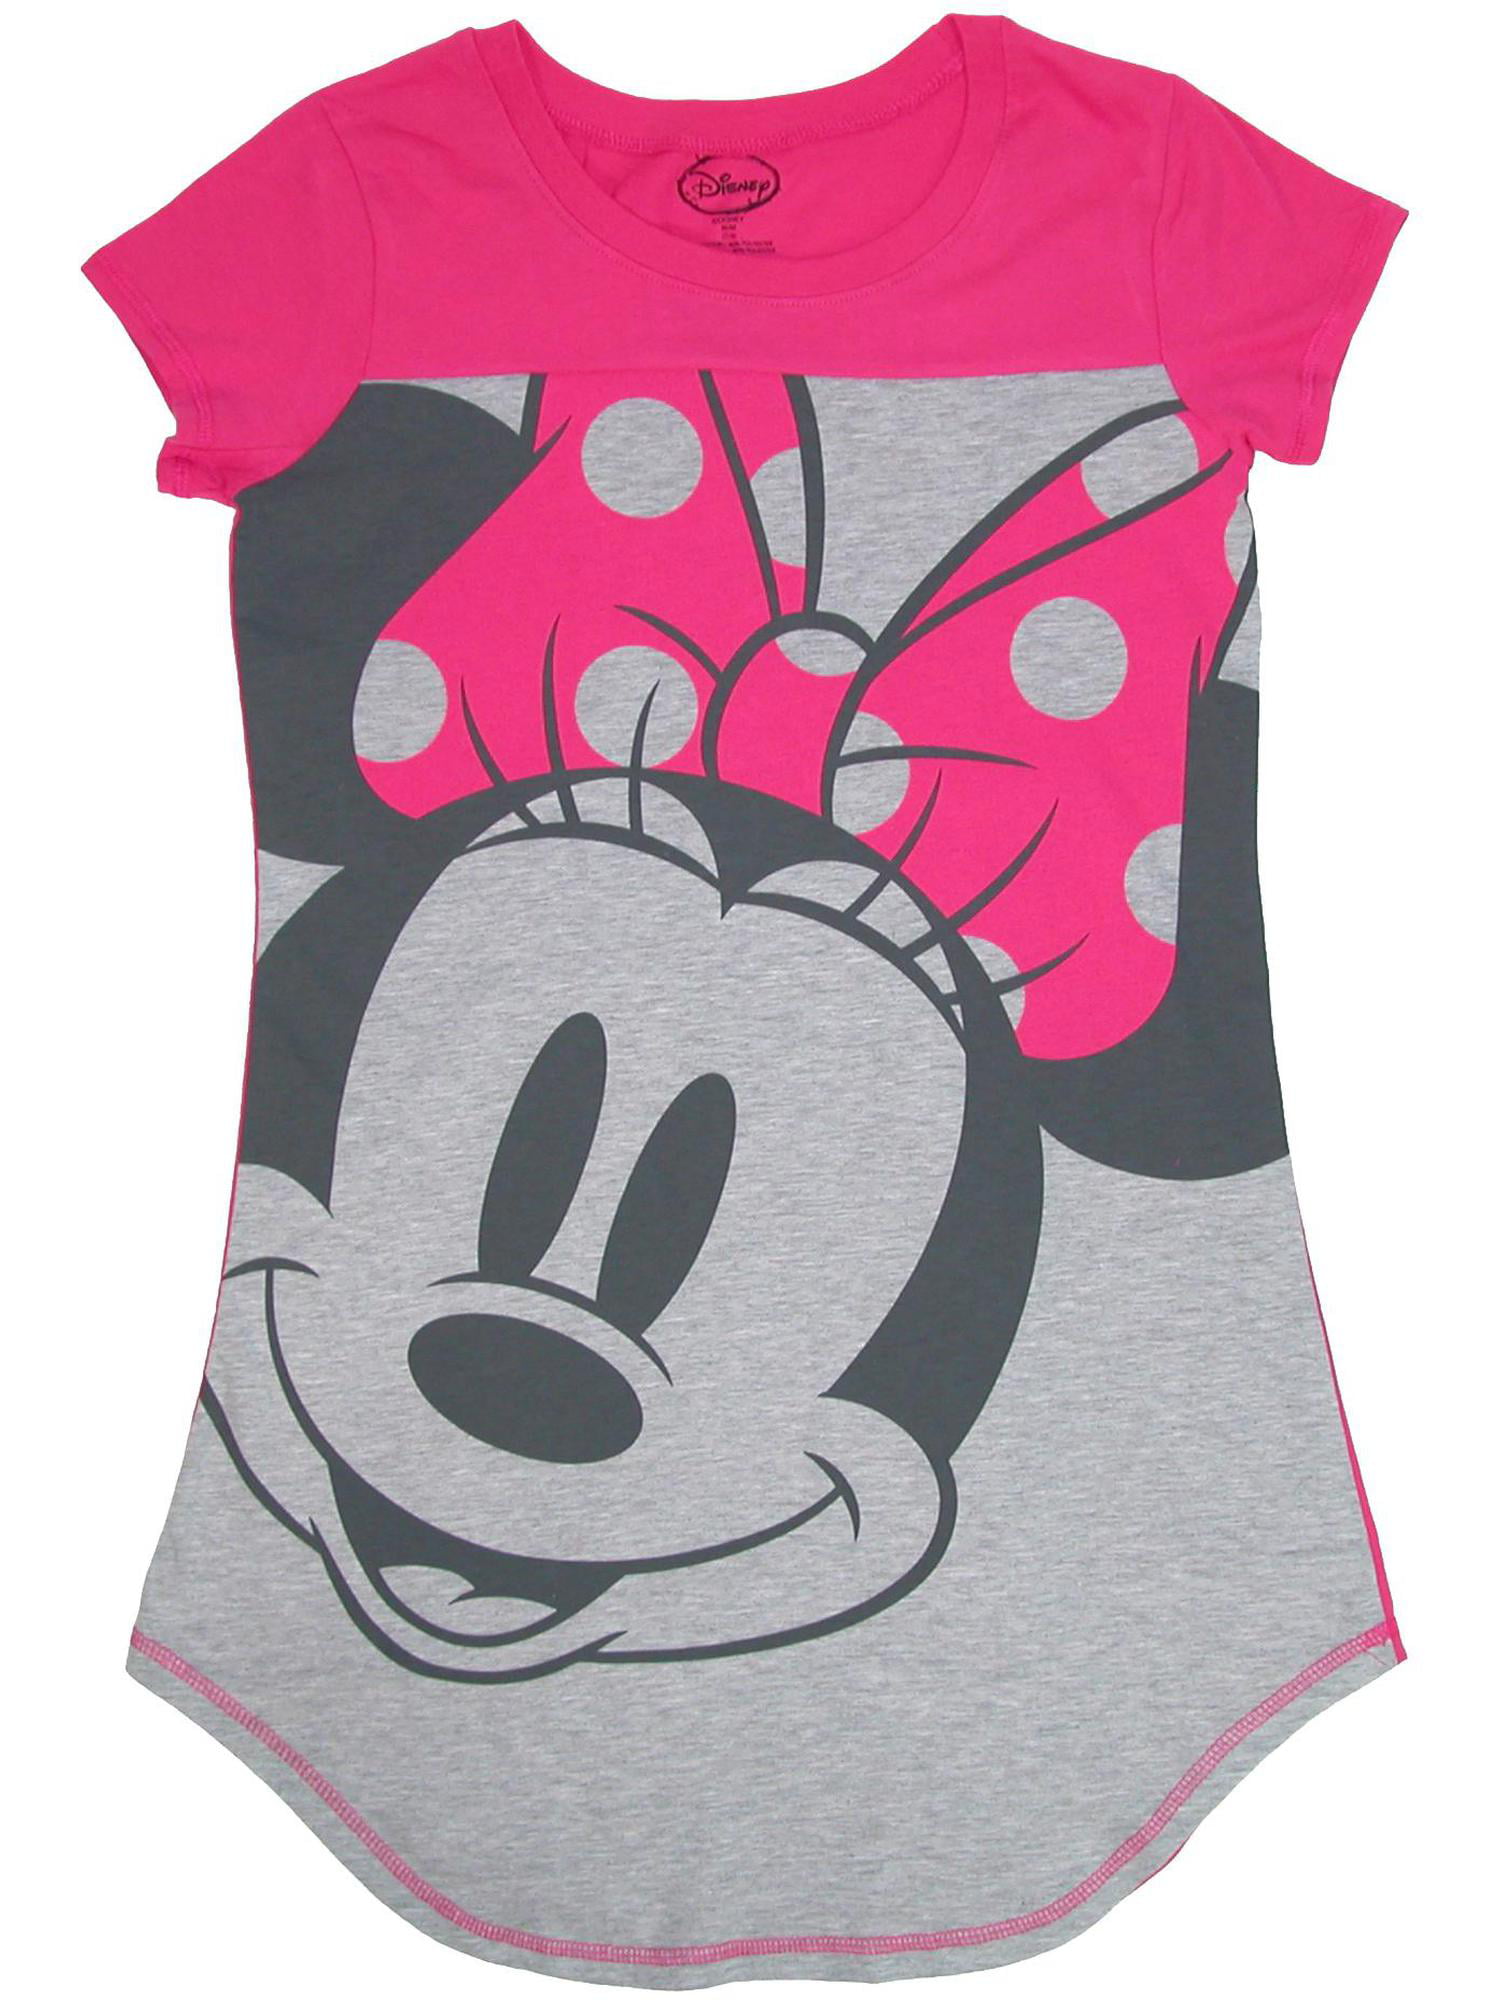 Disney Adult Junior Sleep Shirt Thumbs Up Mickey